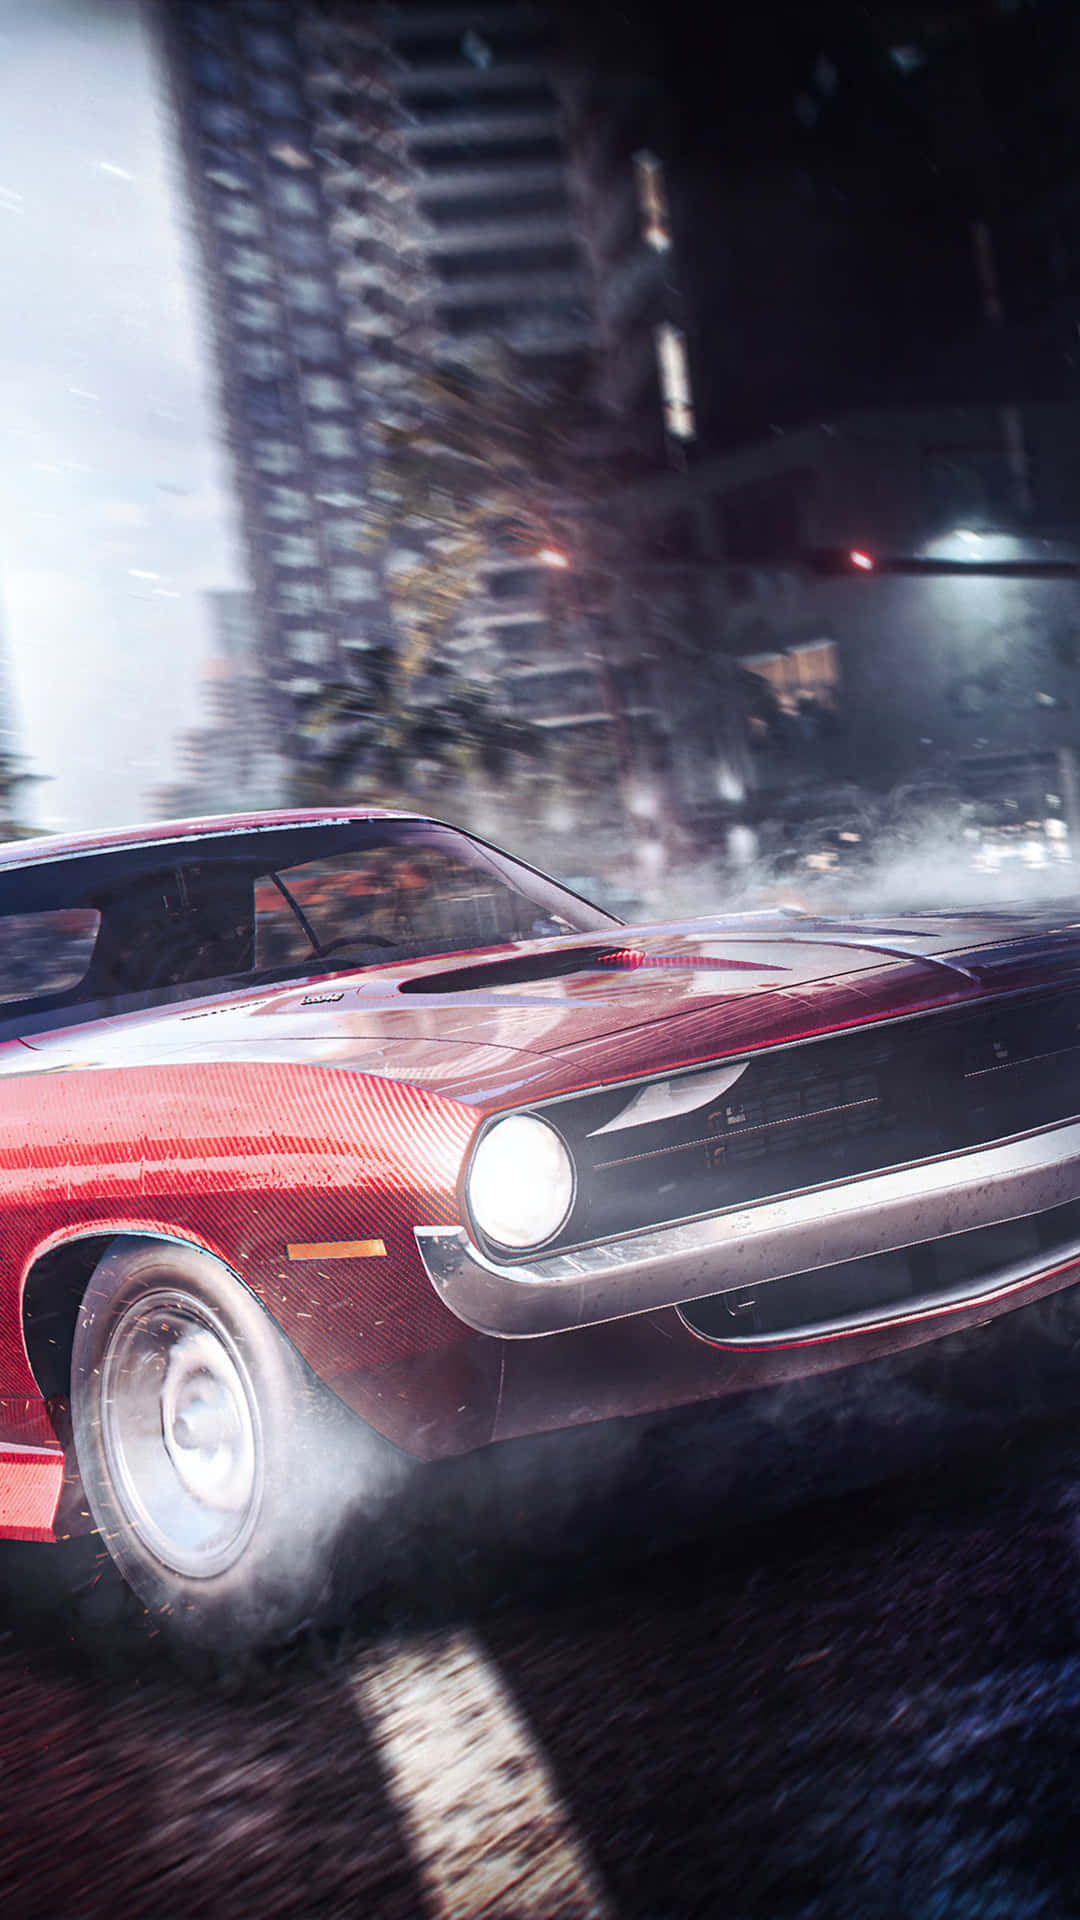 Retrosports Car Pixel 3 Bakgrundsbild För Need For Speed Heat.